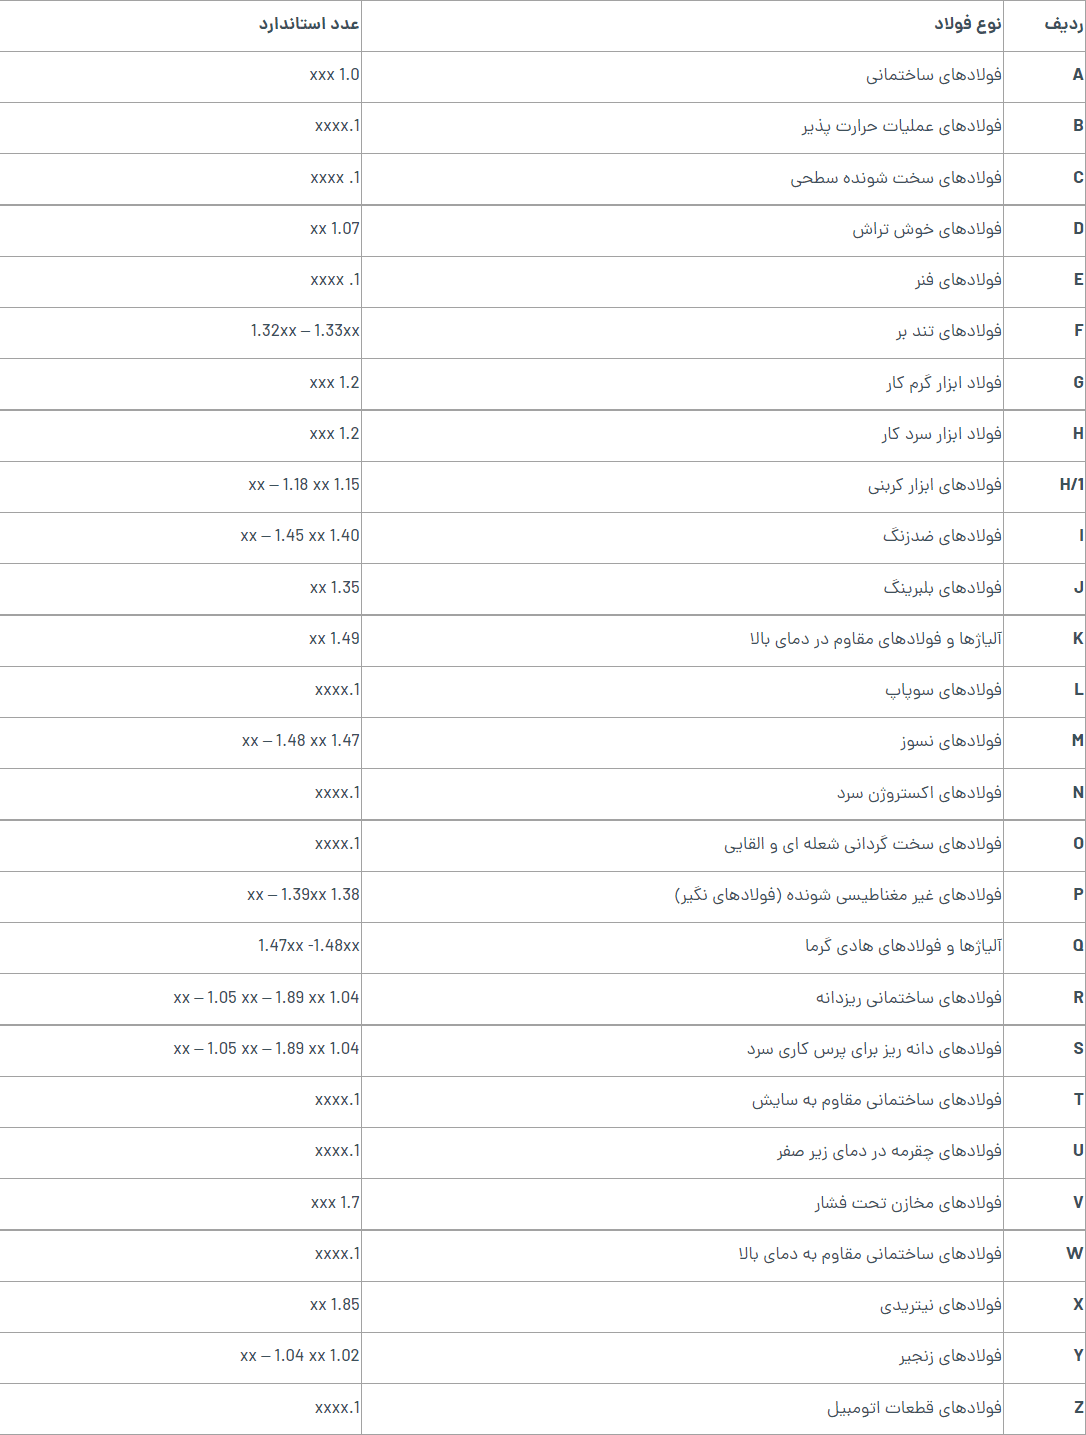 جدول کلیدهای فولاد متداول در ایران